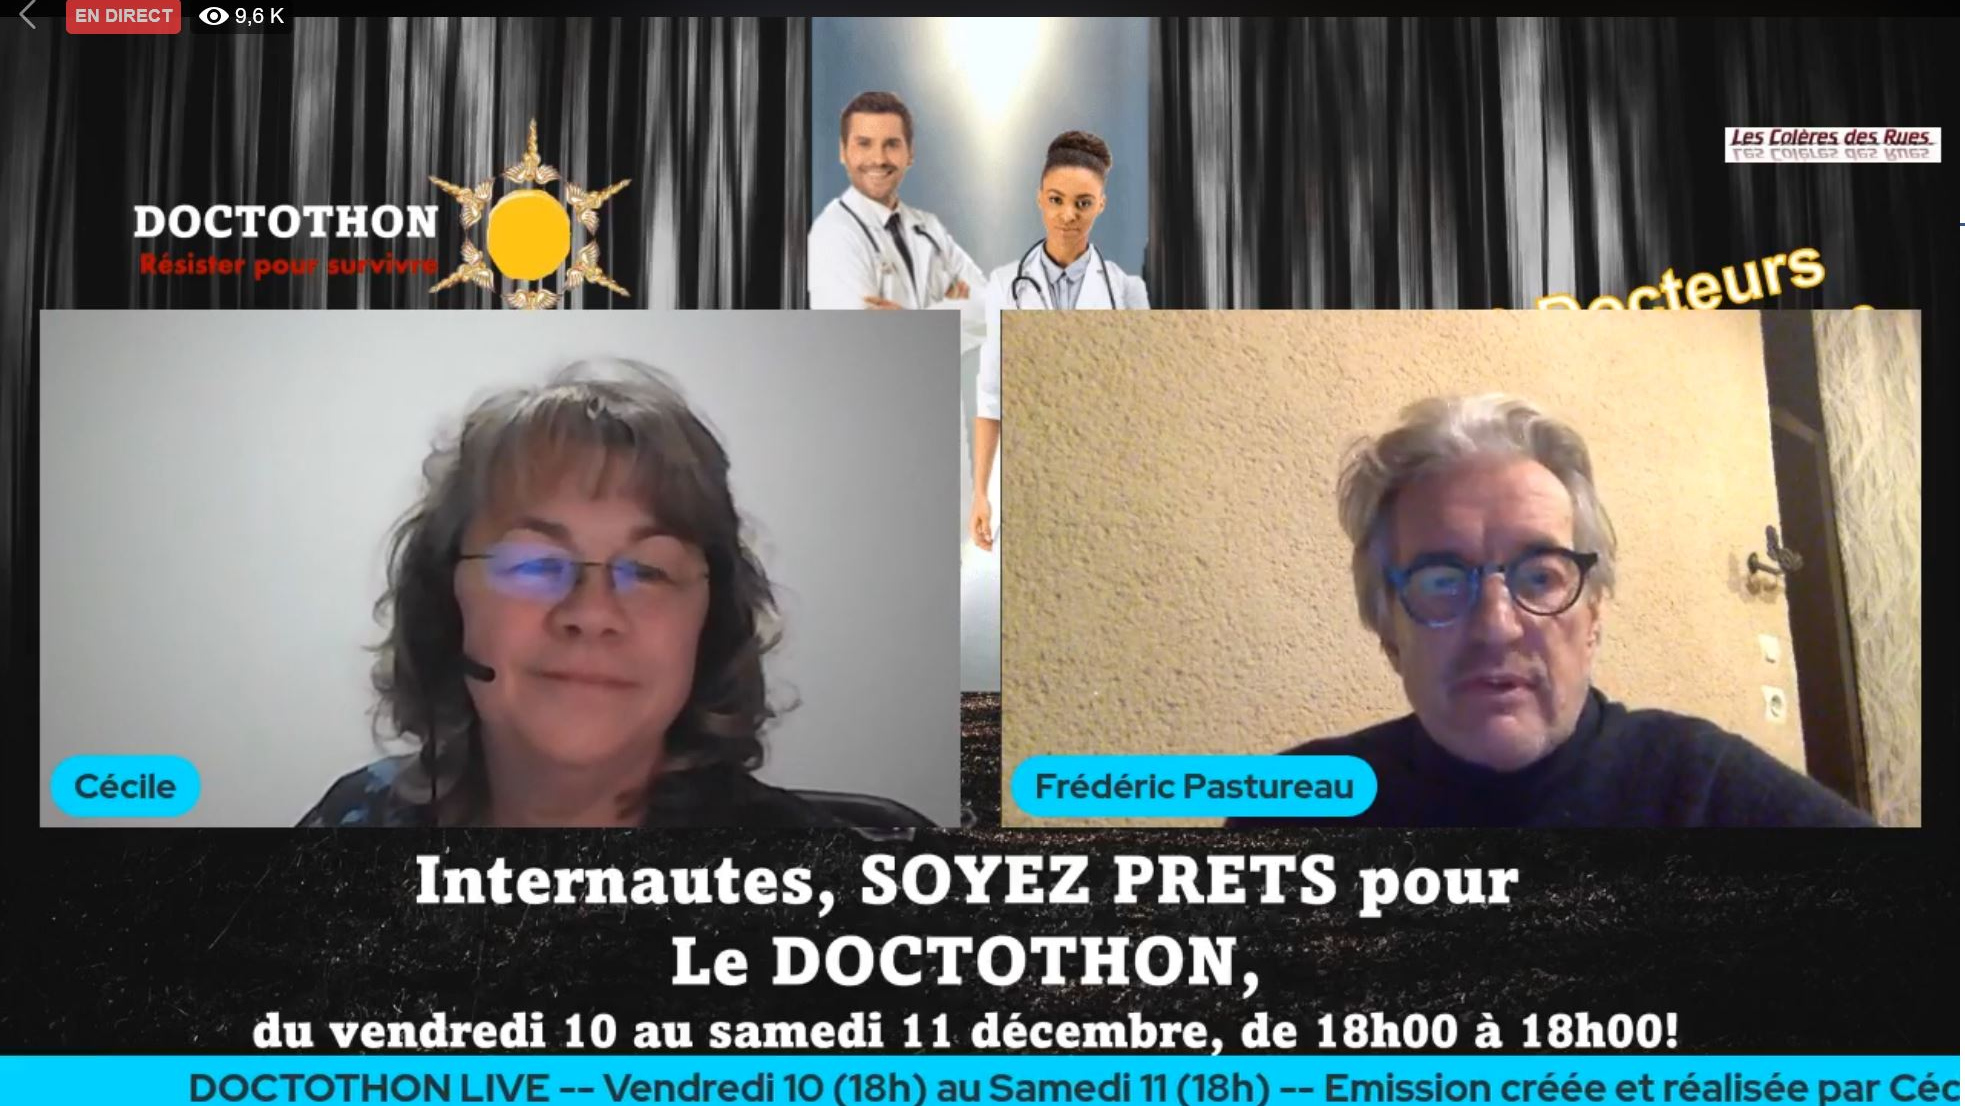 Скриншот страницы пользователя Les Colères des Rues 2.0 в Facebook с прямой трансляцией проекта Doctothon 10 декабря 2021 года.